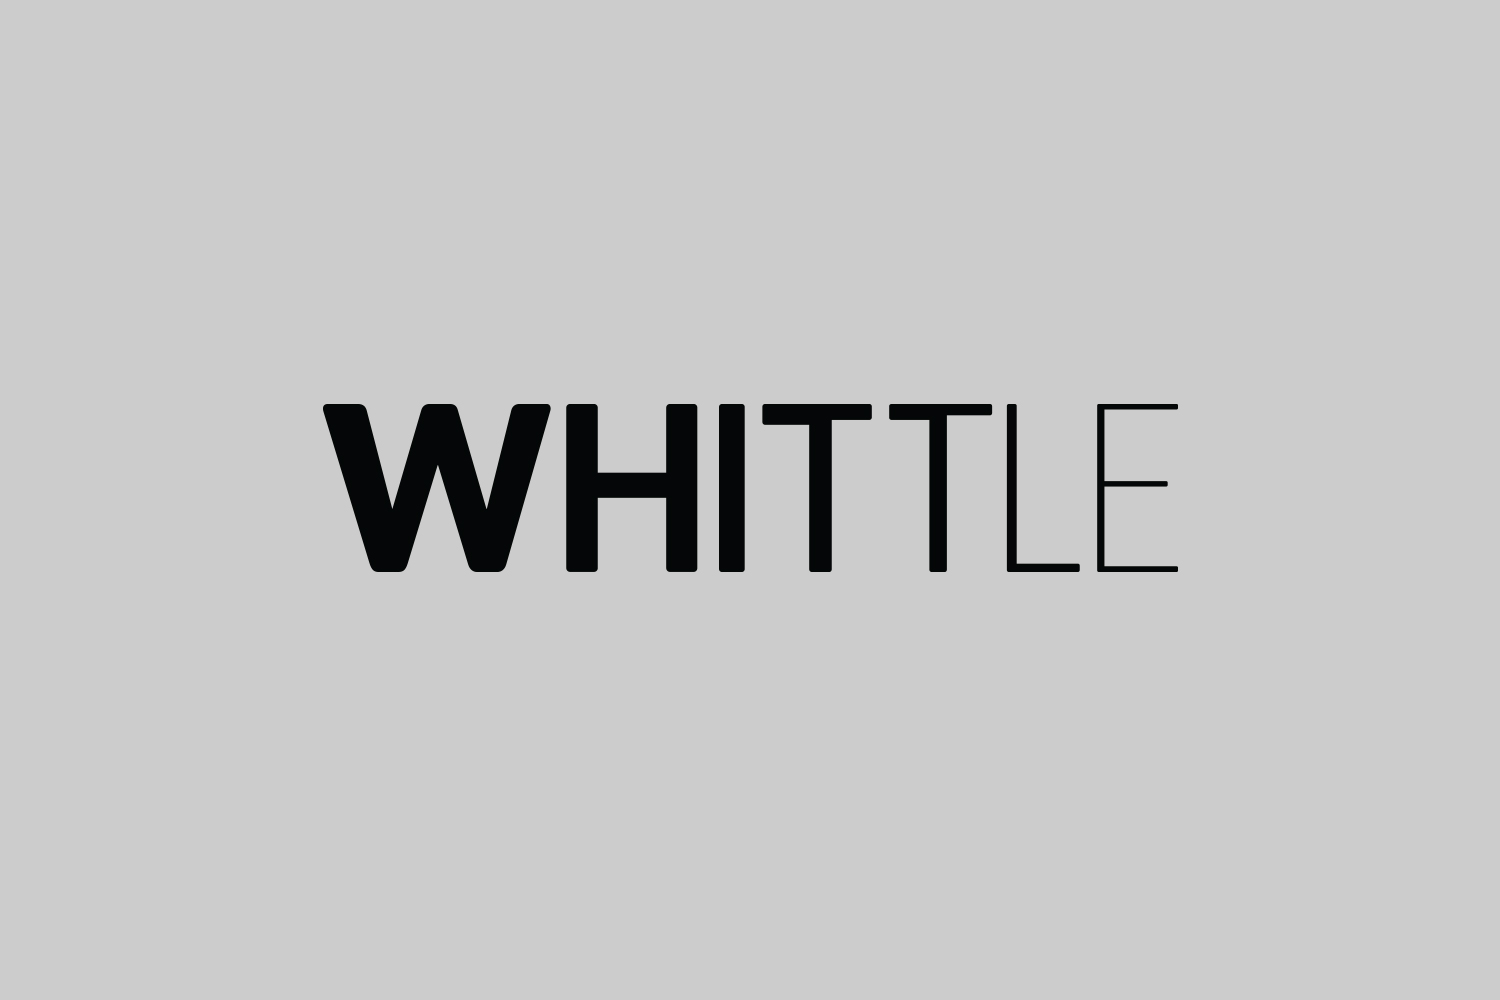 whittle-architects-3-logo-bnw